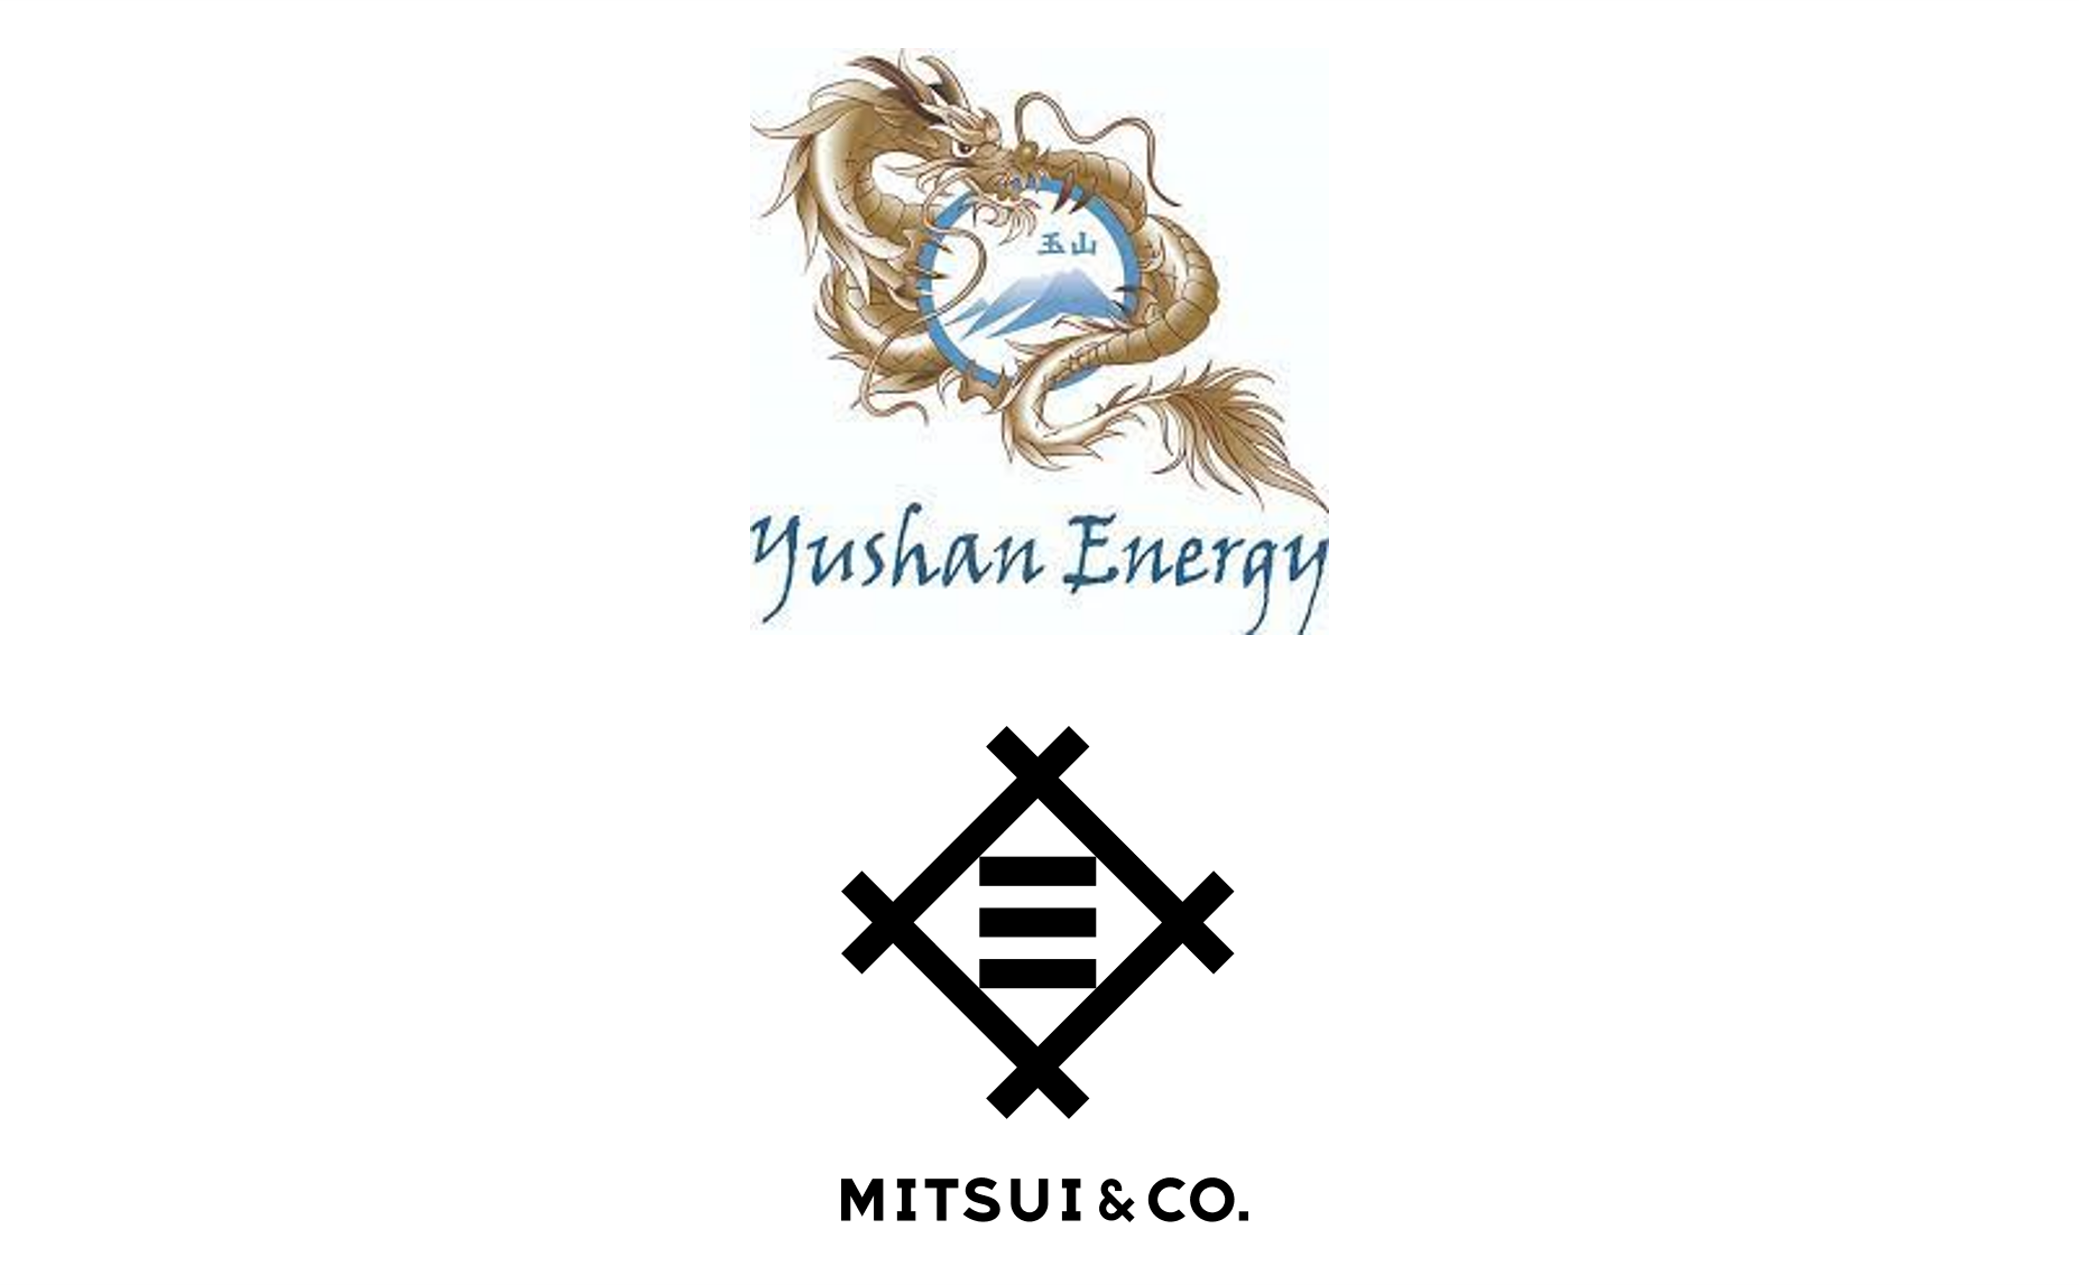 Yushan Energy & Mitsui